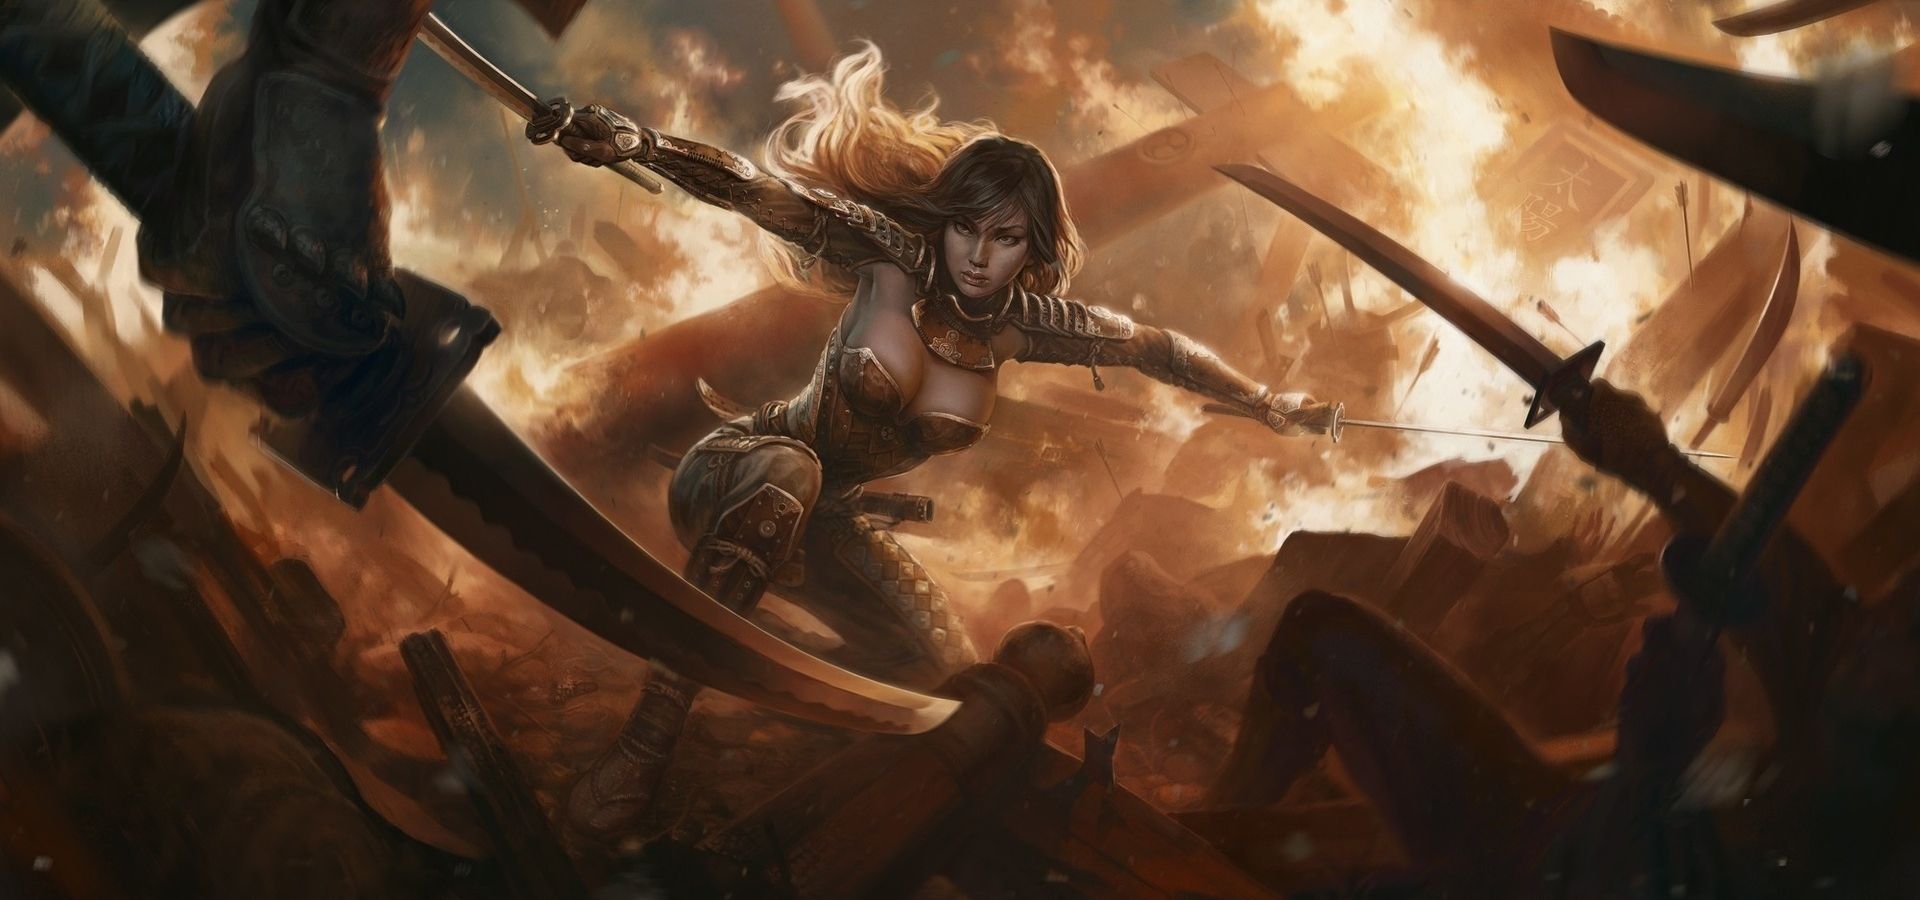 грудастая девушка воин владеющая техникой с двумя мечами, магия фэнтези картинка